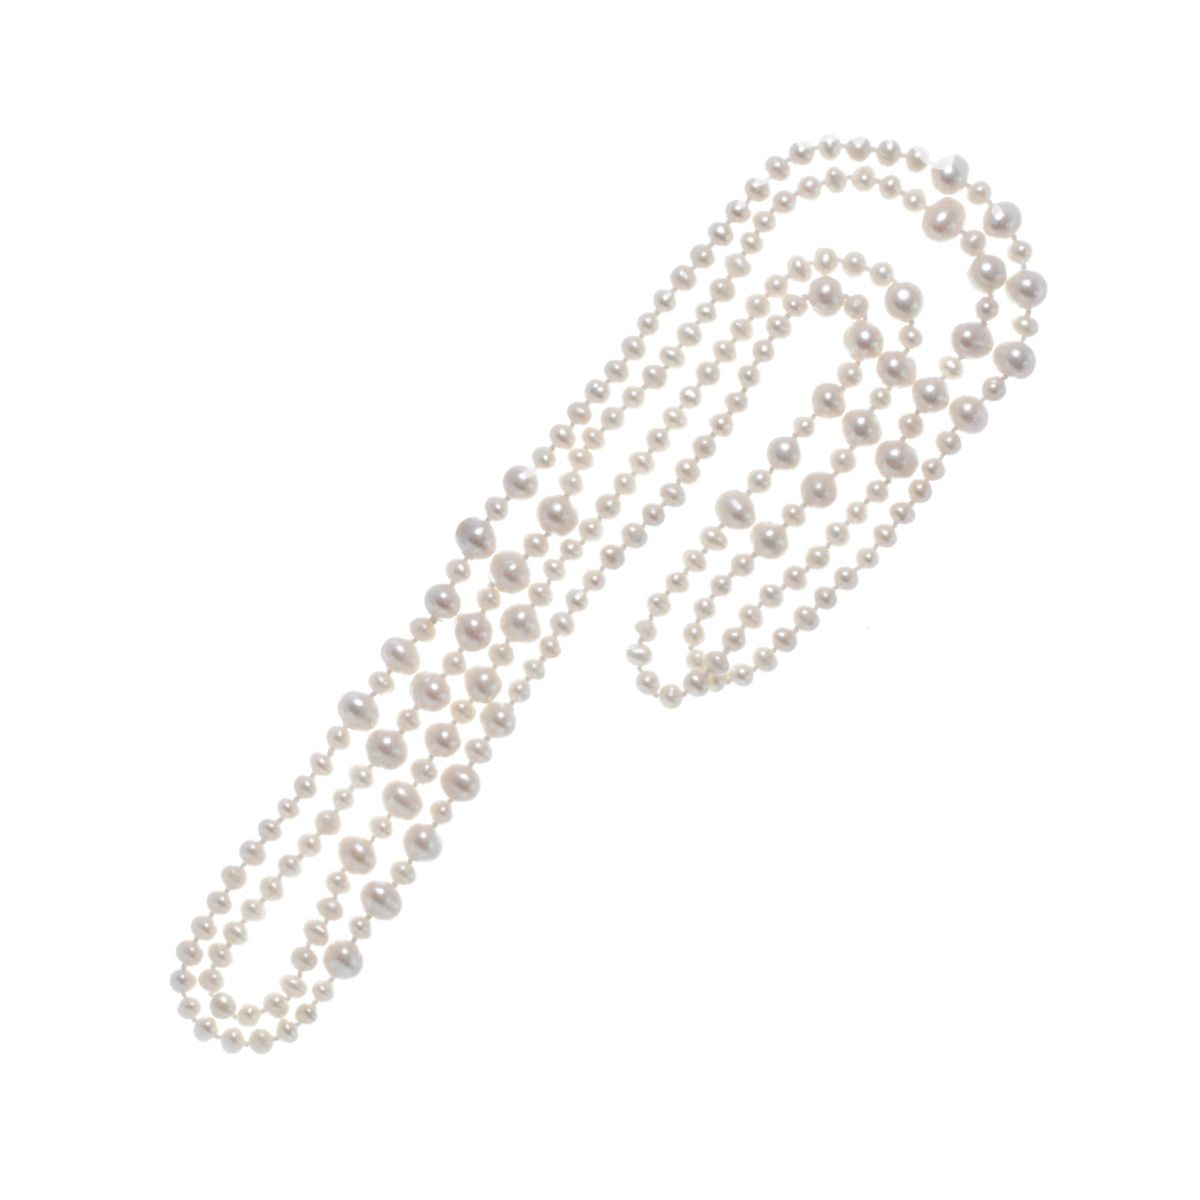 淡水真珠 ネックレス | 三重県真珠加工販売協同組合【MPO】